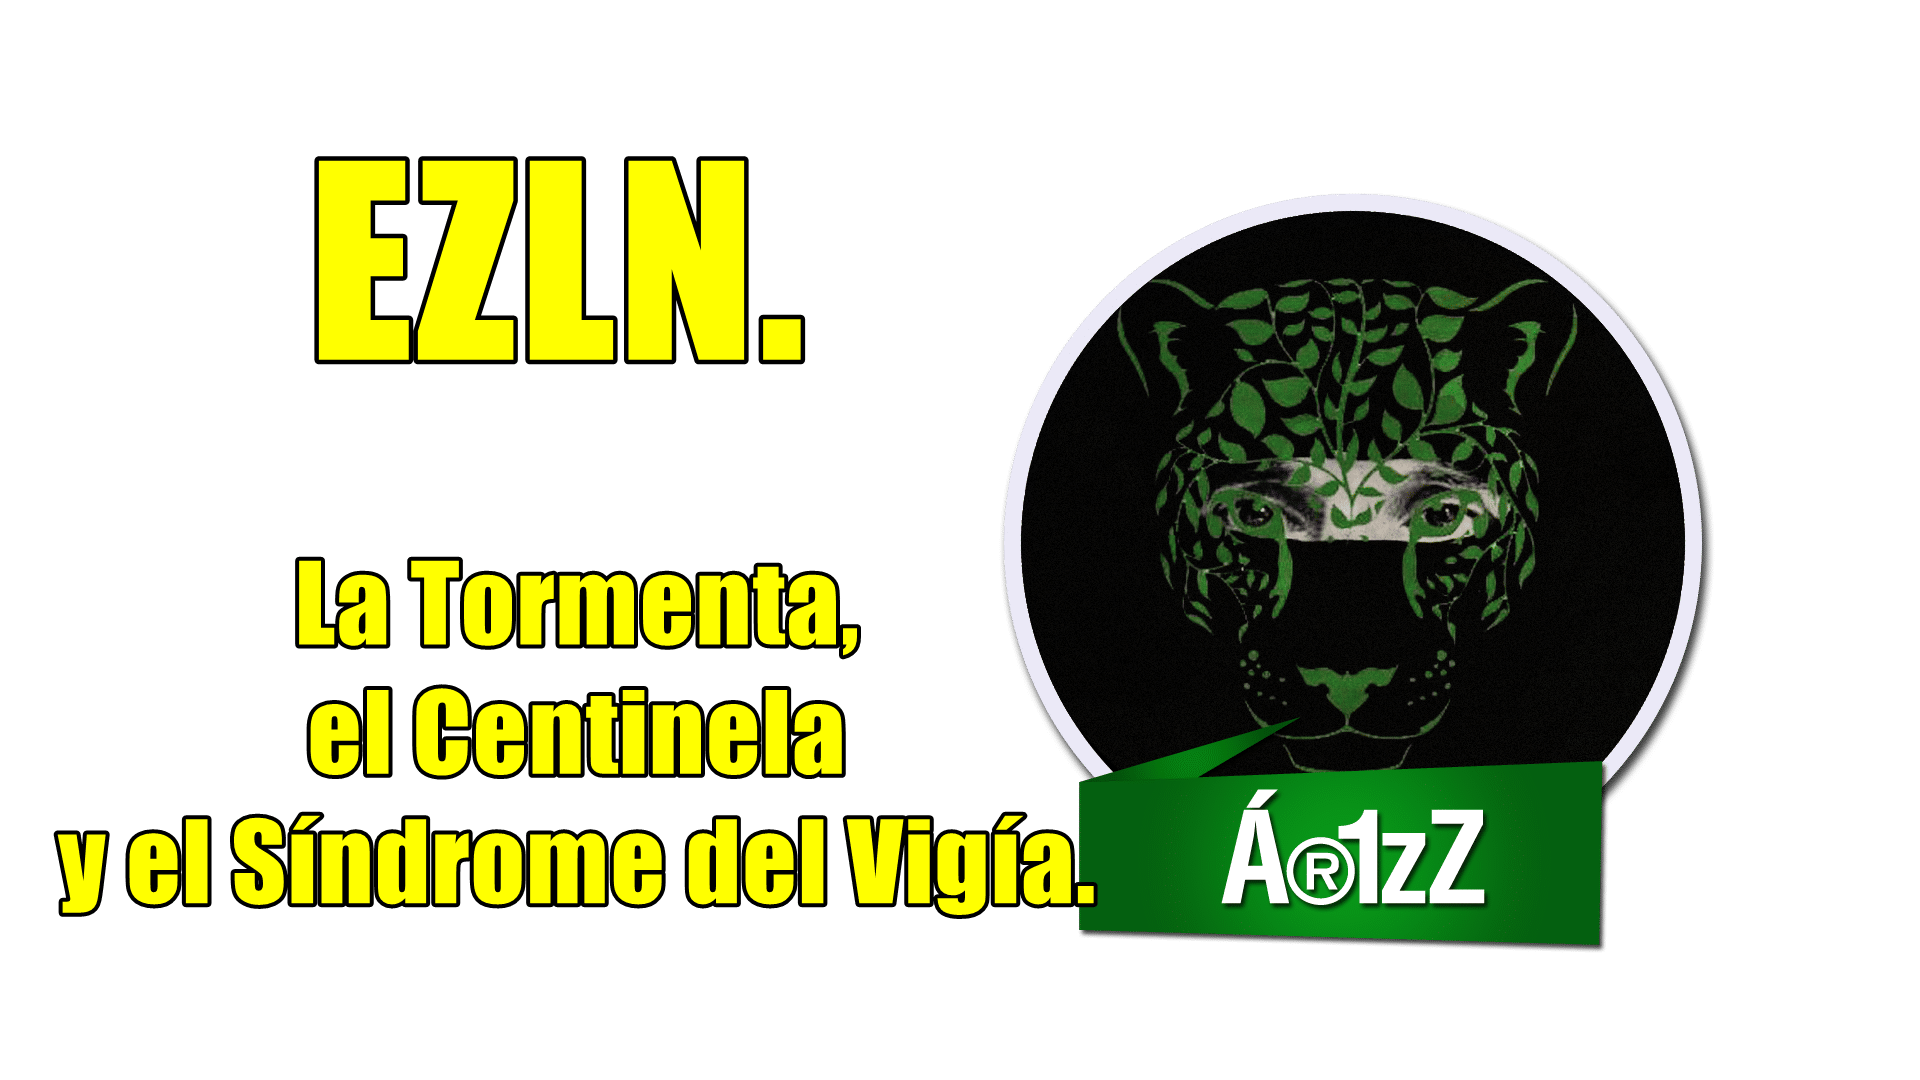 Comunicado del EZLN: La Tormenta, el Centinela y el Síndrome del Vigía.